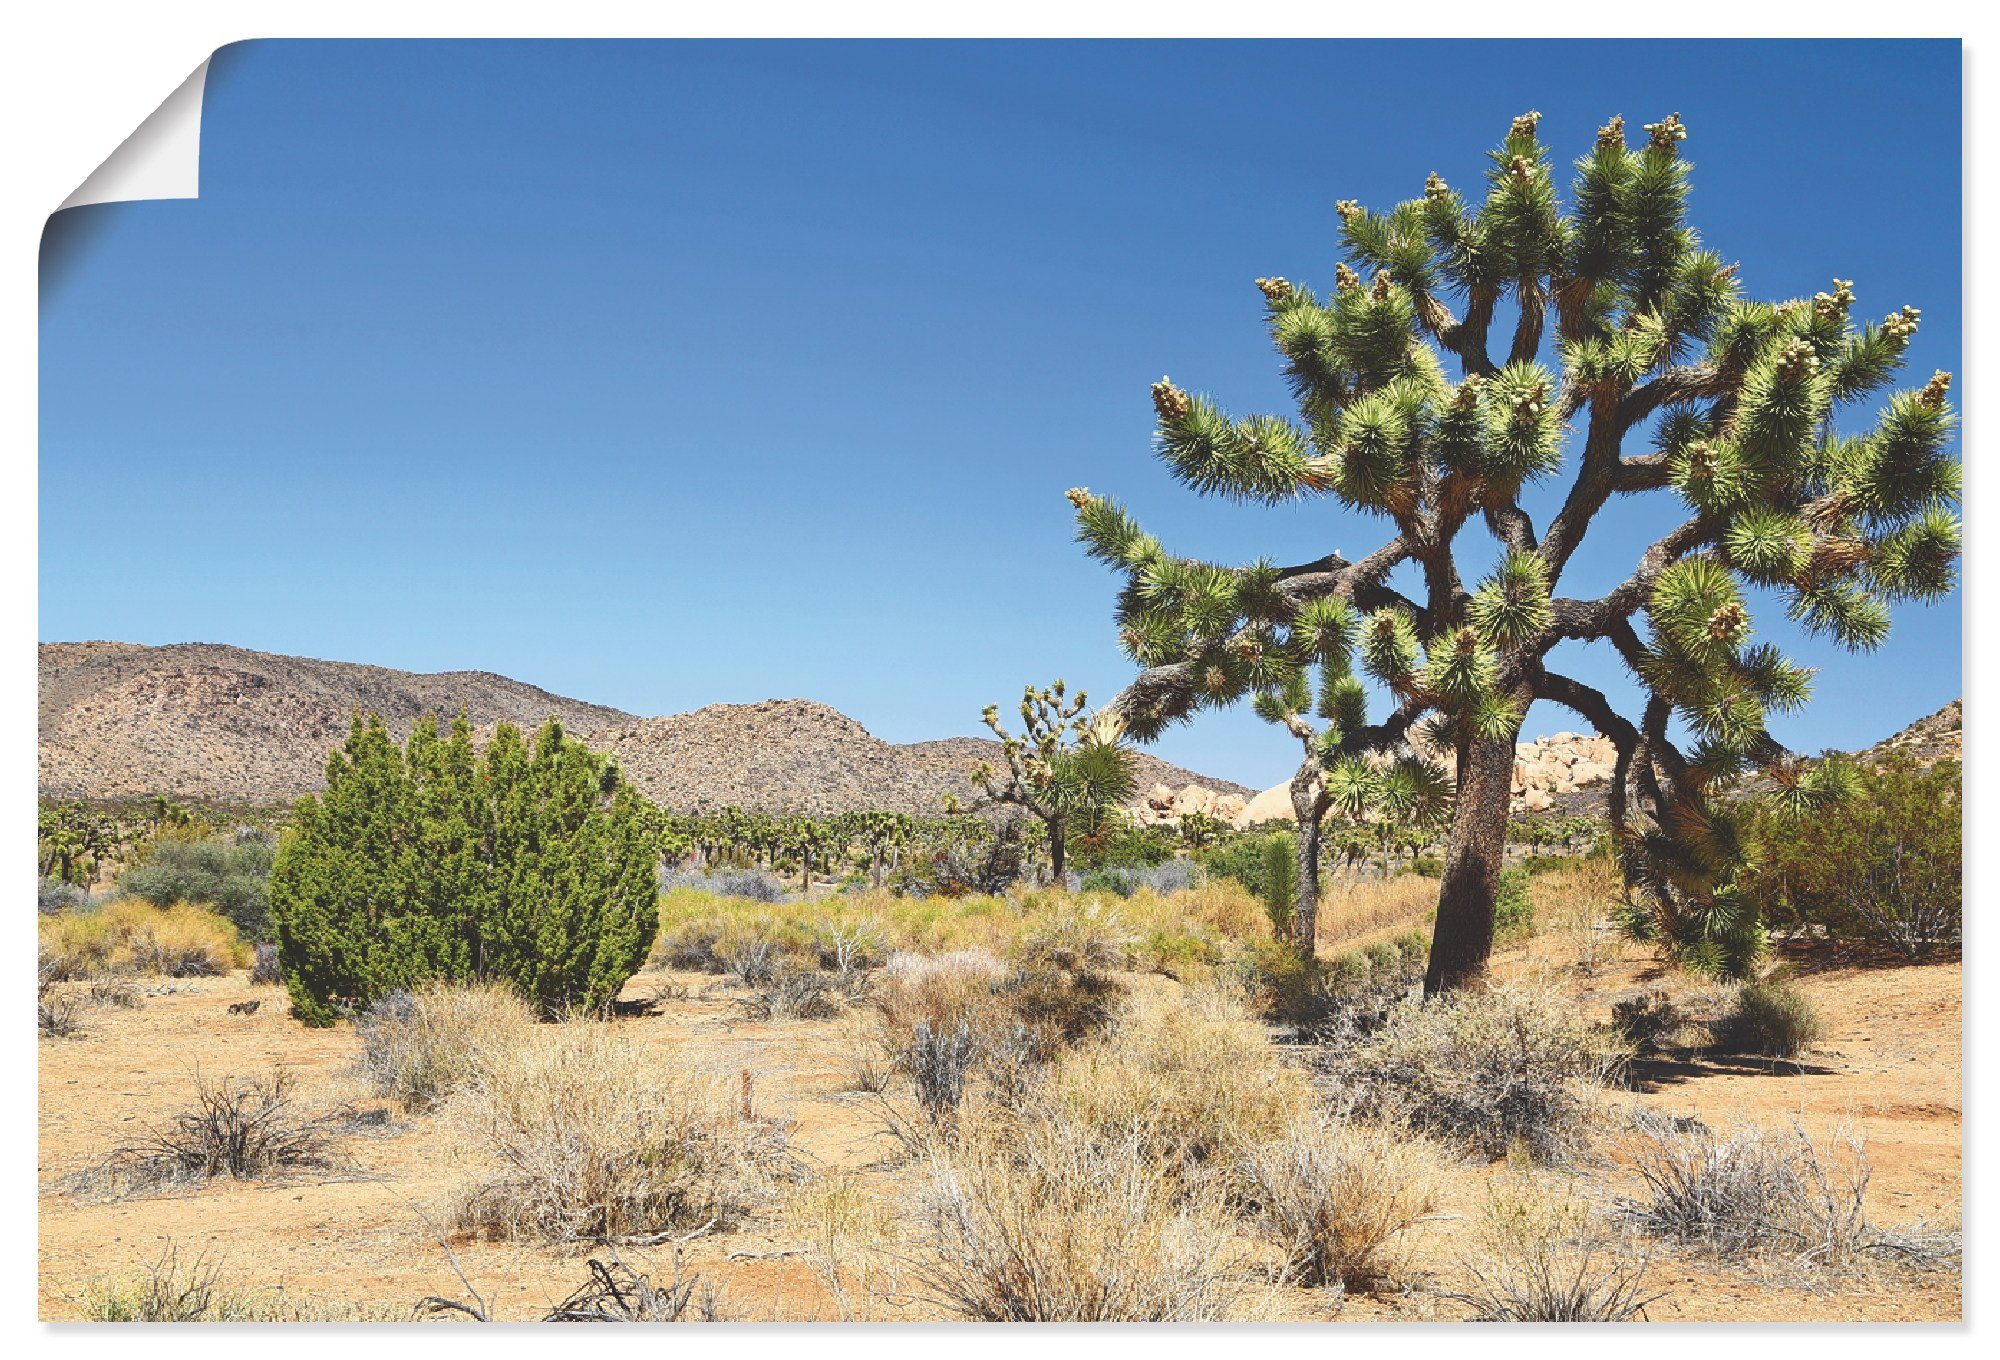 Artland Artprint Joshua Tree in de Mojave woestijn I in vele afmetingen & productsoorten - artprint van aluminium / artprint voor buiten, artprint op linnen, poster, muursticker /